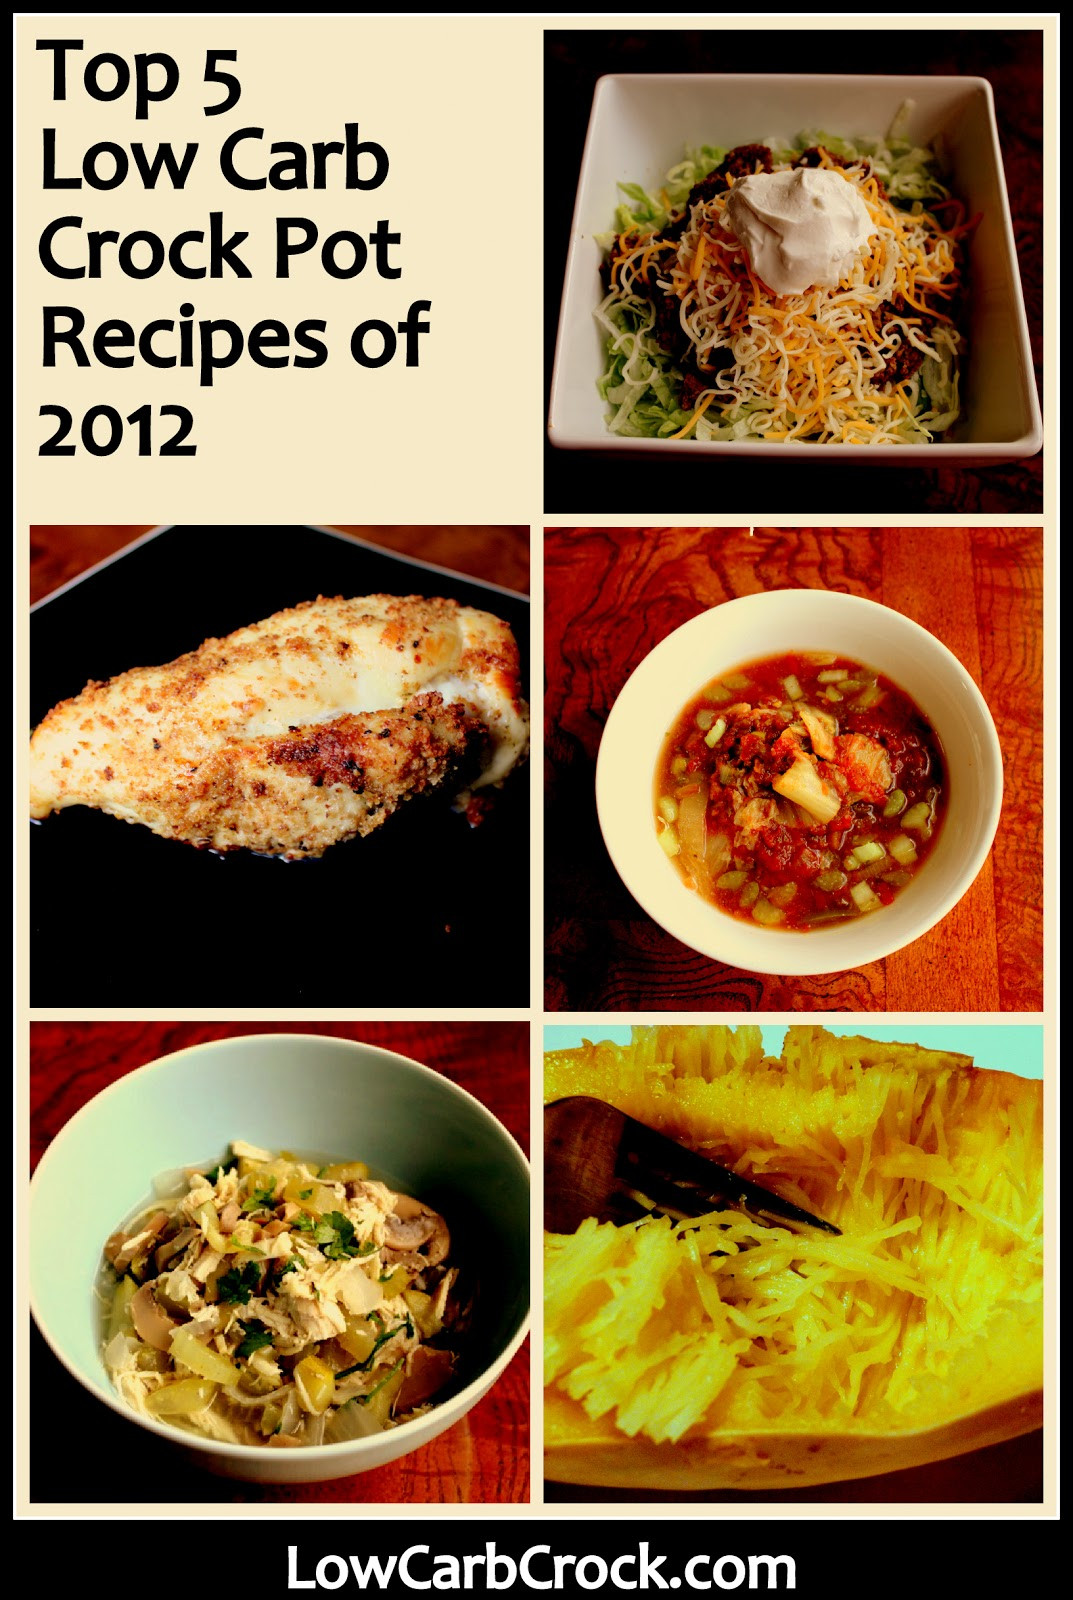 Best Low Carb Crock Pot Recipes
 Top 5 Low Carb Crock Pot Recipes of 2012